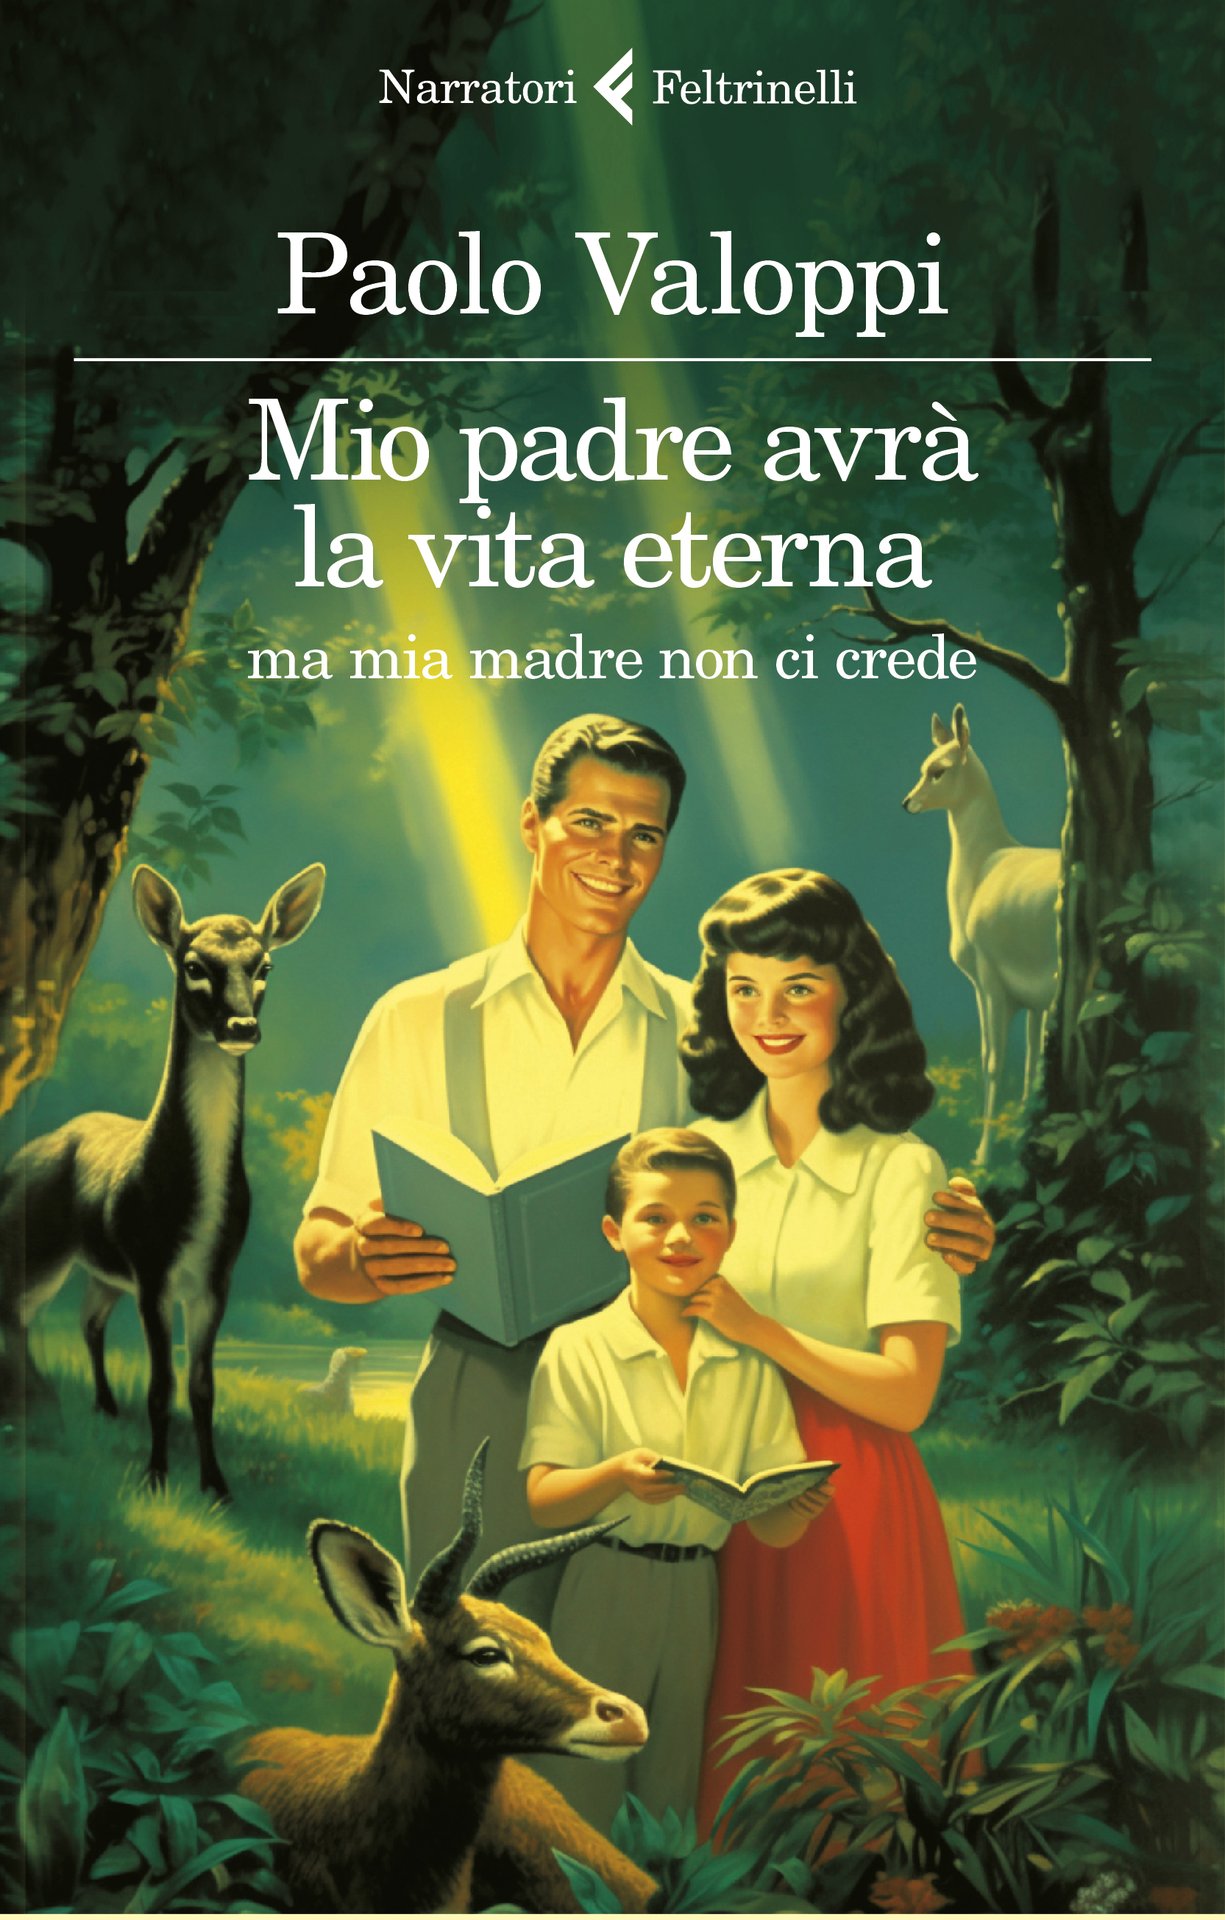 Paolo Valoppi presenta "Mio padre avrà la vita eterna ma mia madre non ci crede" a Roma